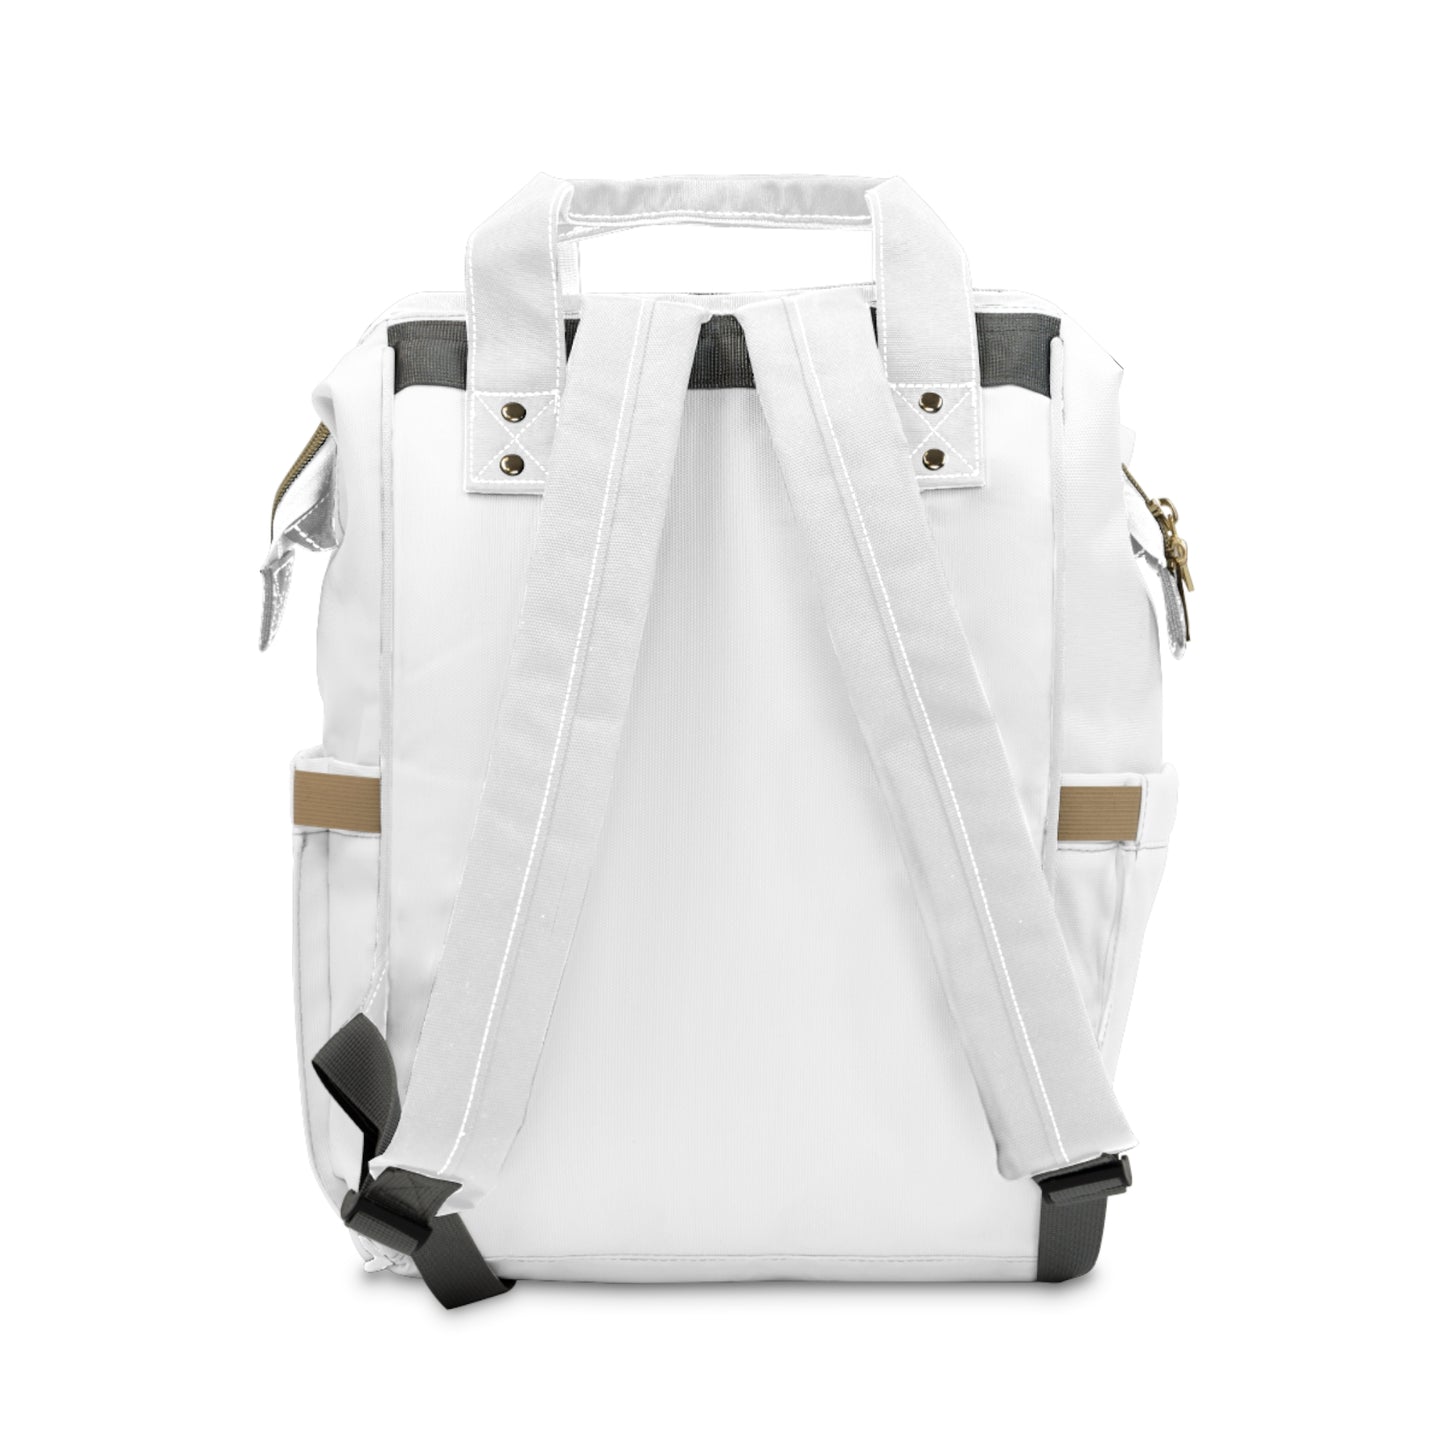 Diaper Backpack- Toronto New Mom Brand